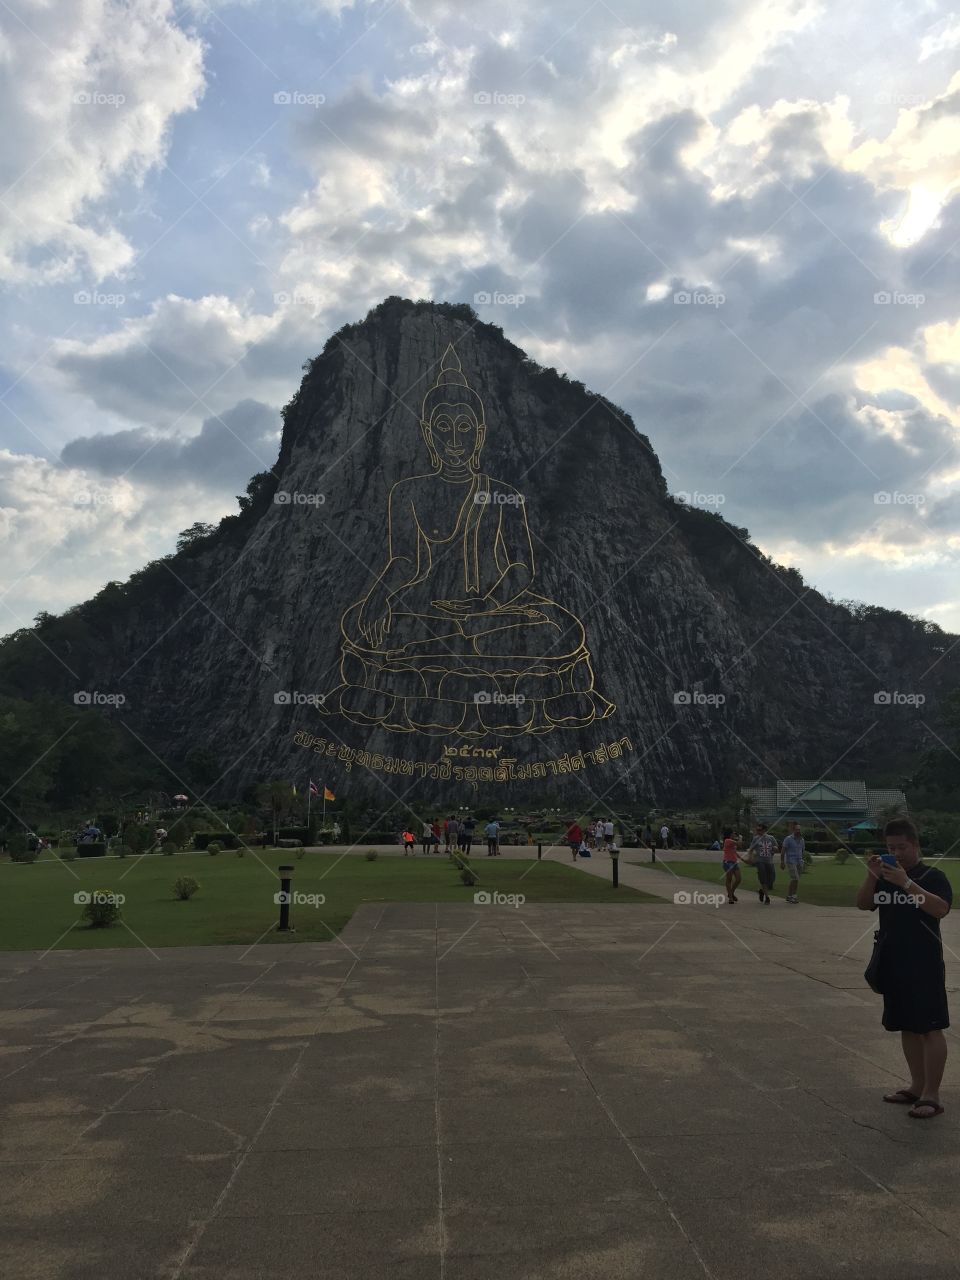 Bhudda Mt. . This was taken near Pattaya, Thailand